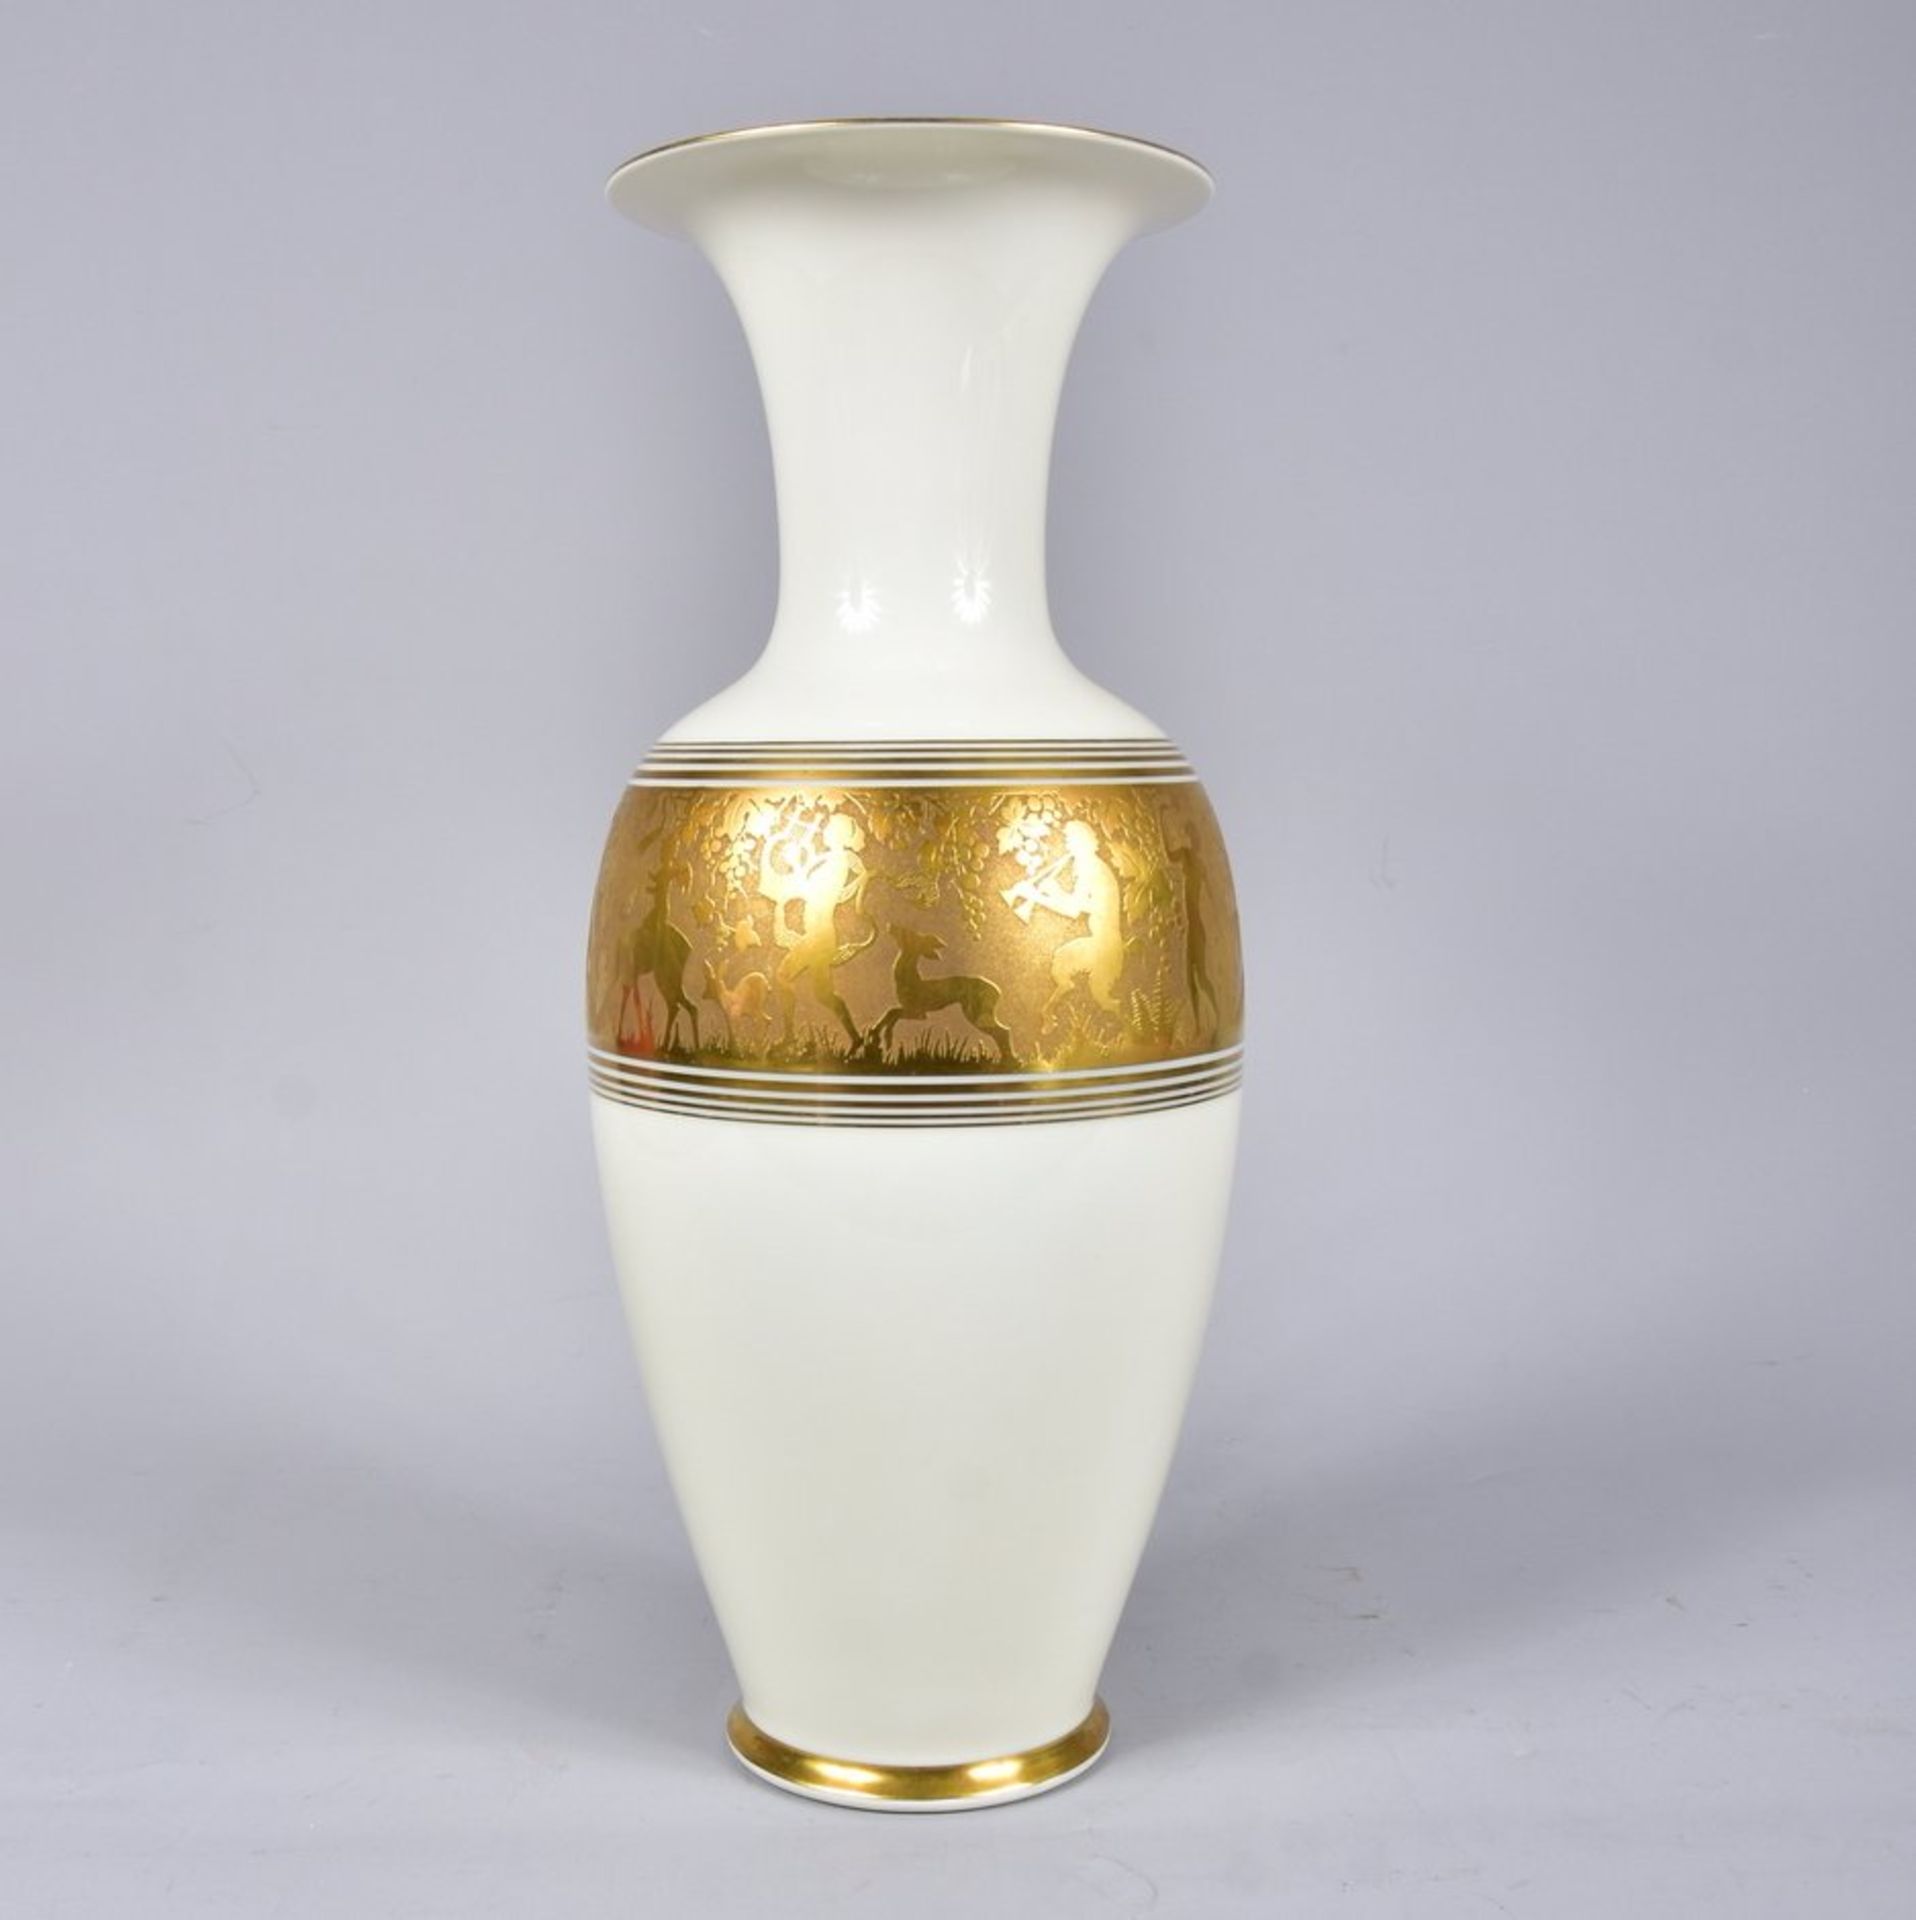 Große Vase Marke "Volkstedt" Elfenbein, echt geätzt,Nr. 3375.8, mit breitem Goldrelief-Band,